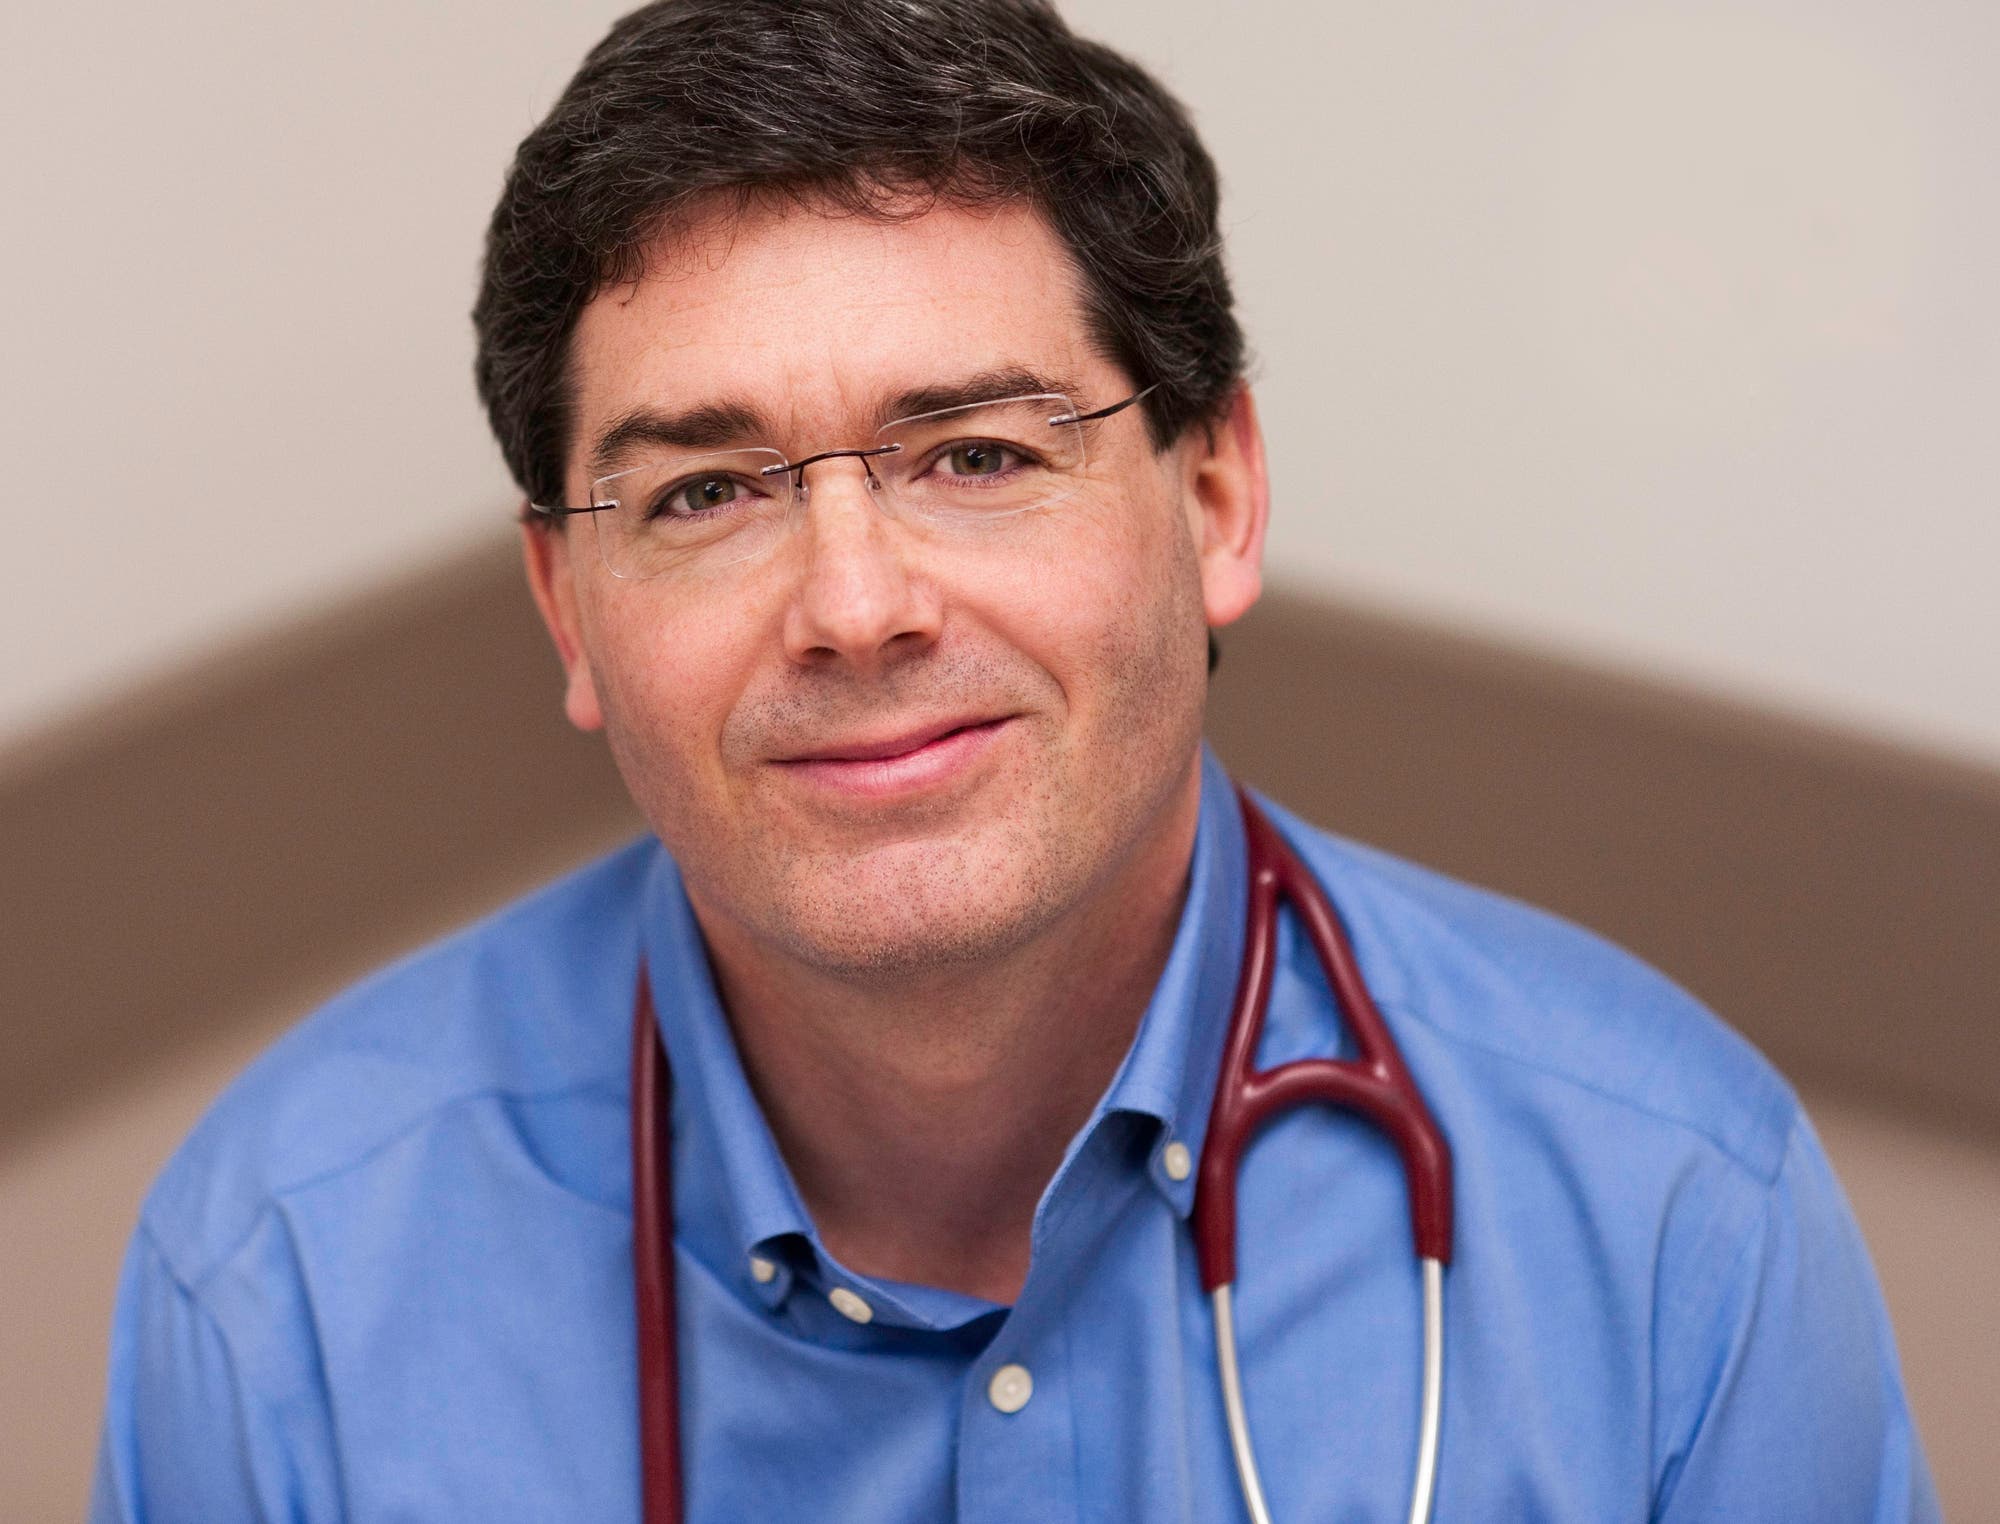 Porträtfoto des kanadischen Mediziners Scott Garrison